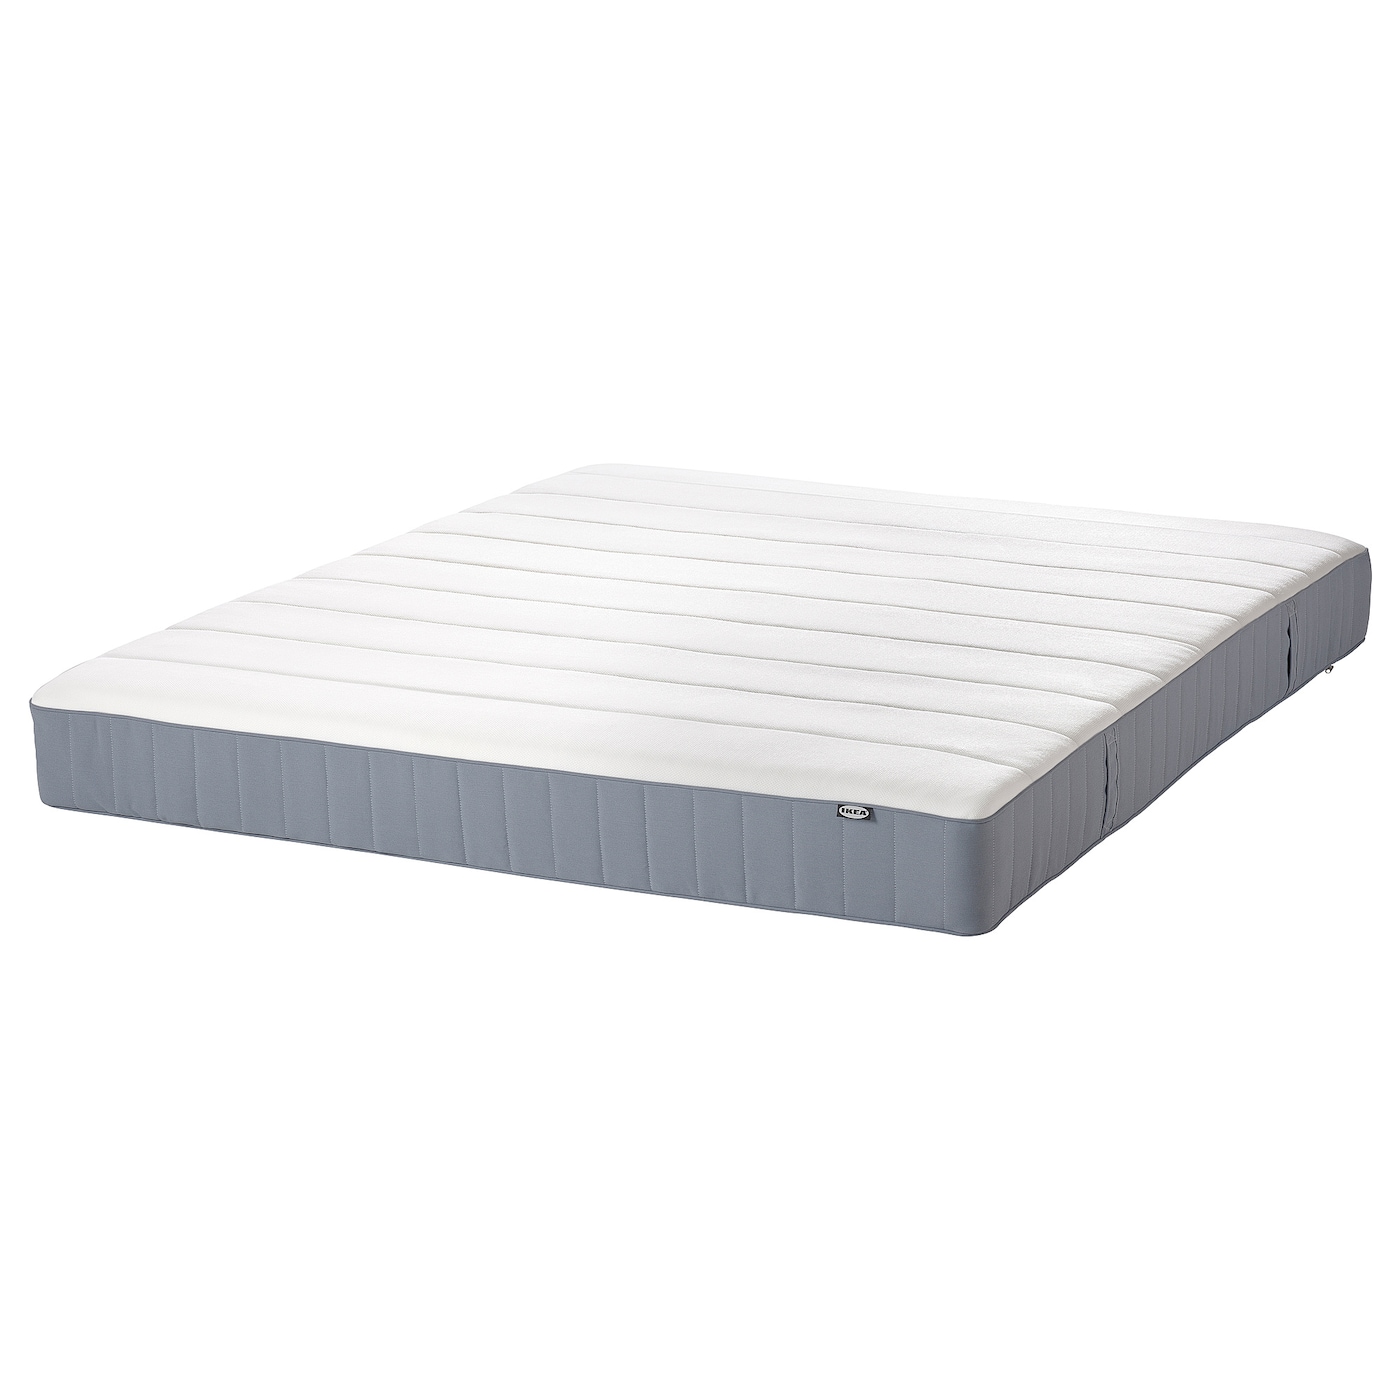 Матрас для двуспальной кровати - VESTERÖY IKEA/ ВЕСТЕРОЙ ИКЕА, 160х200 см, белый